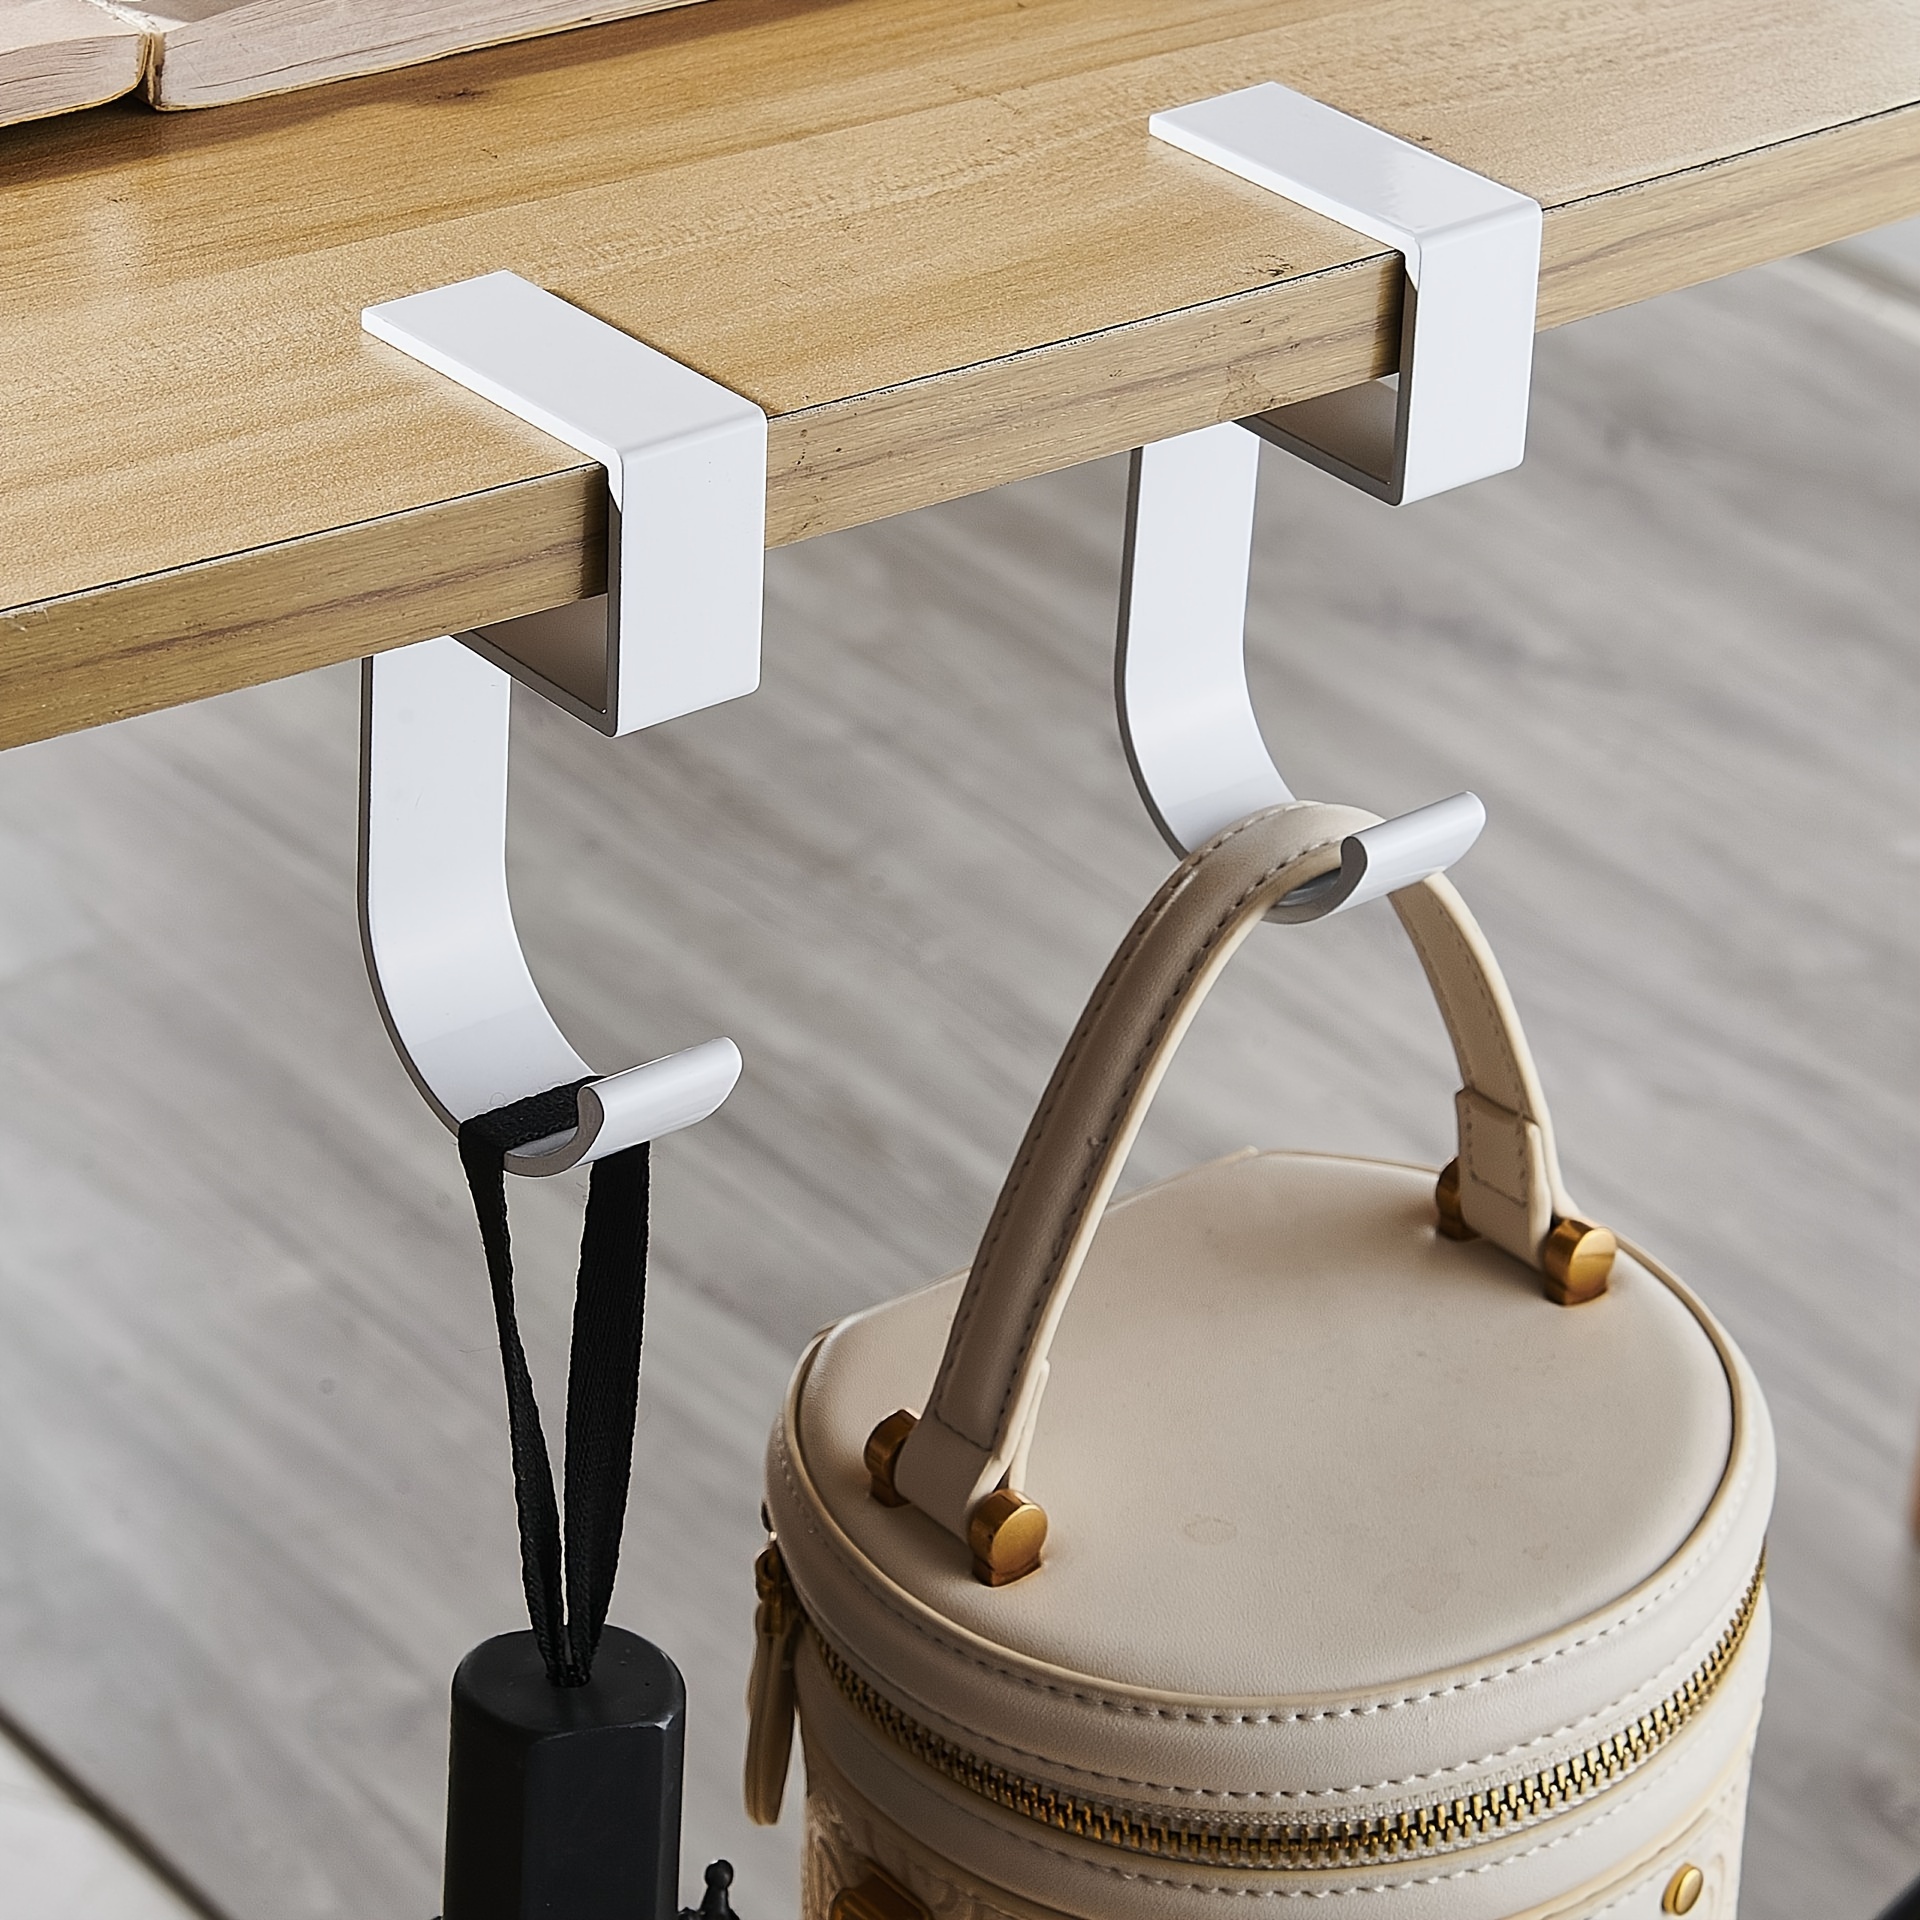 S shape Desk Hook Handbag Hook Table Portable Practical Hook - Temu Canada